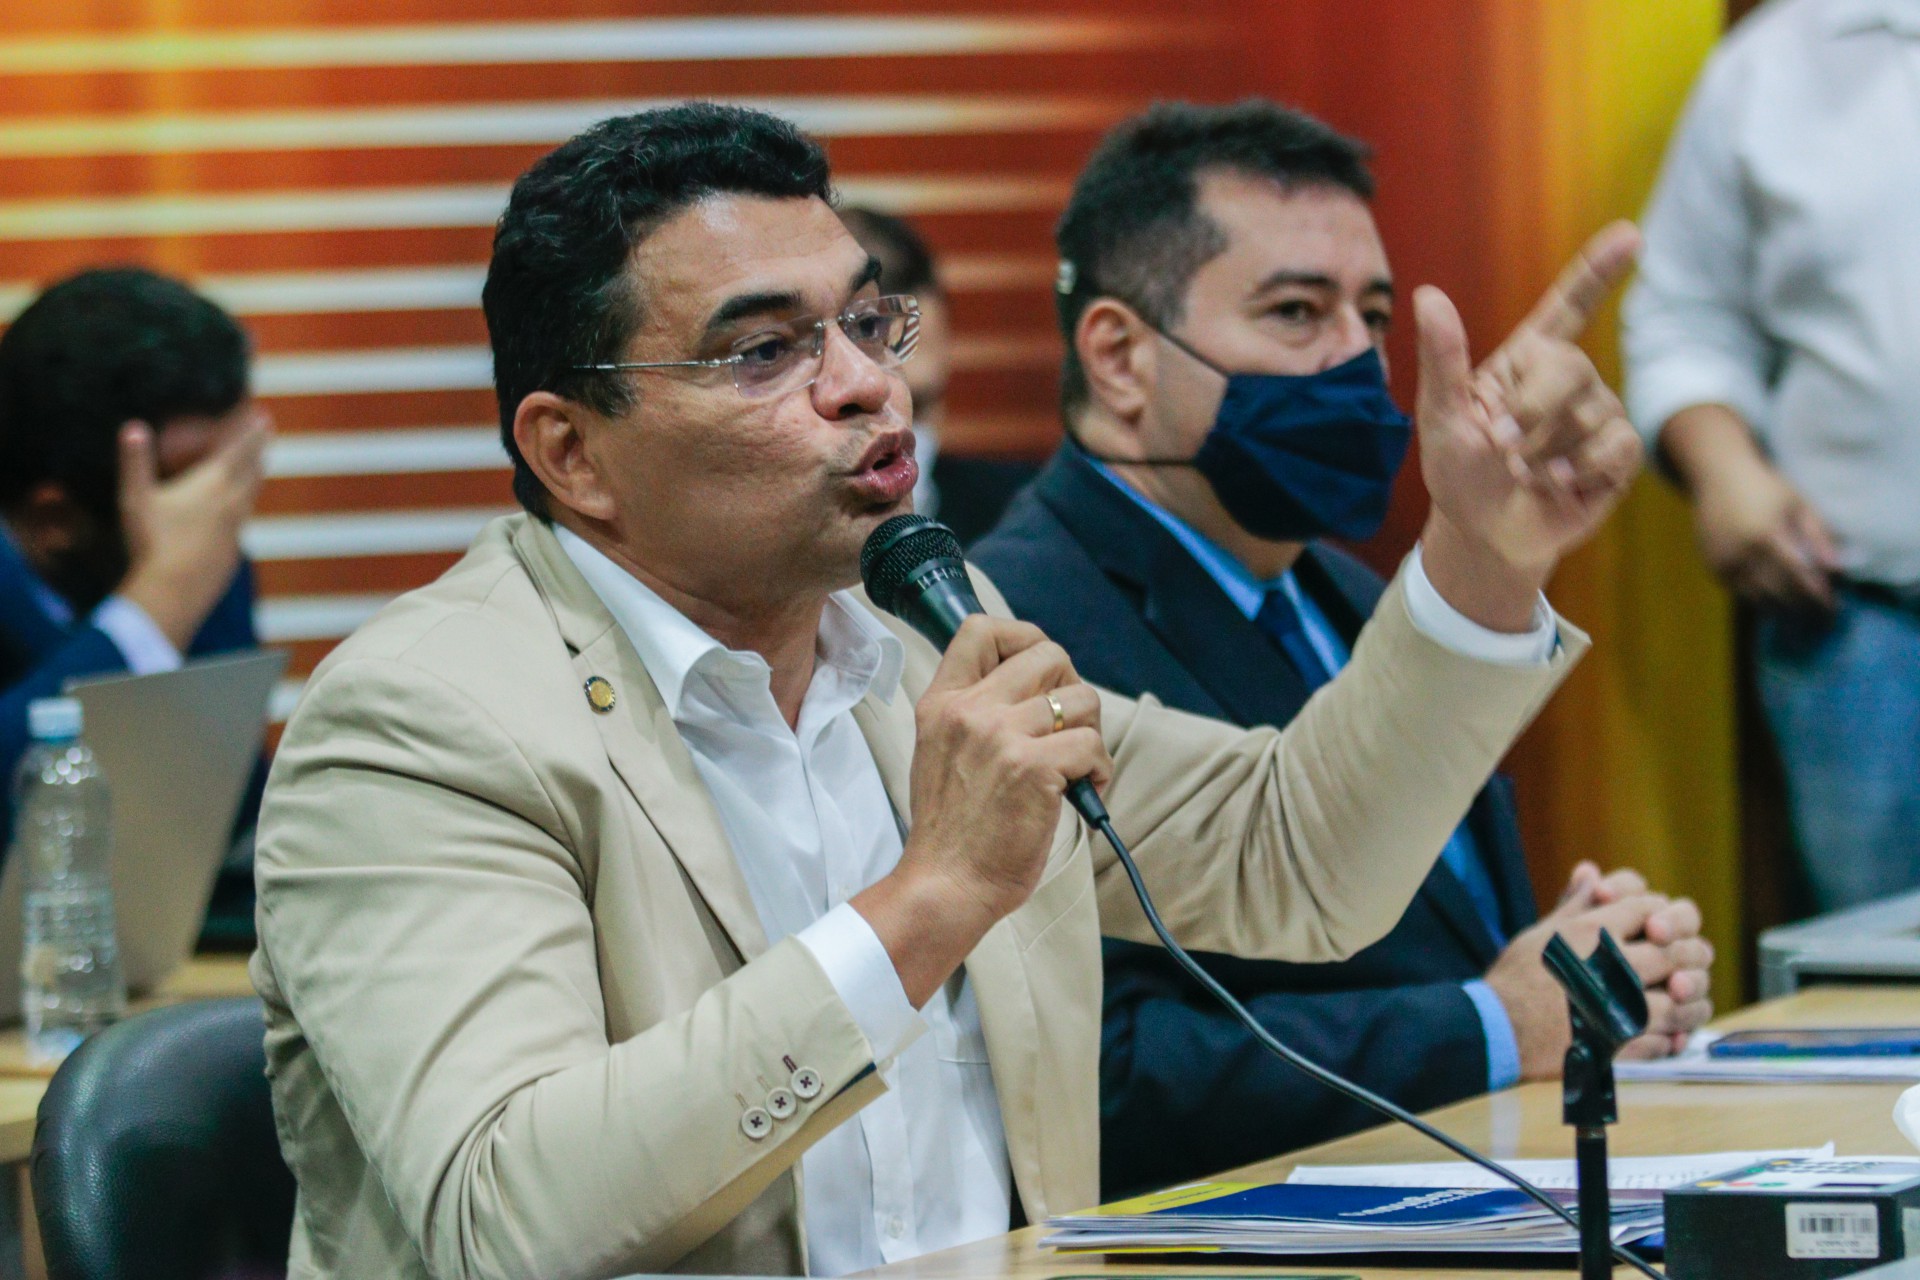 ￼SARGENTO Reginauro presidiu a APS até dias antes do motim de 2020 (Foto: FERNANDA BARROS)